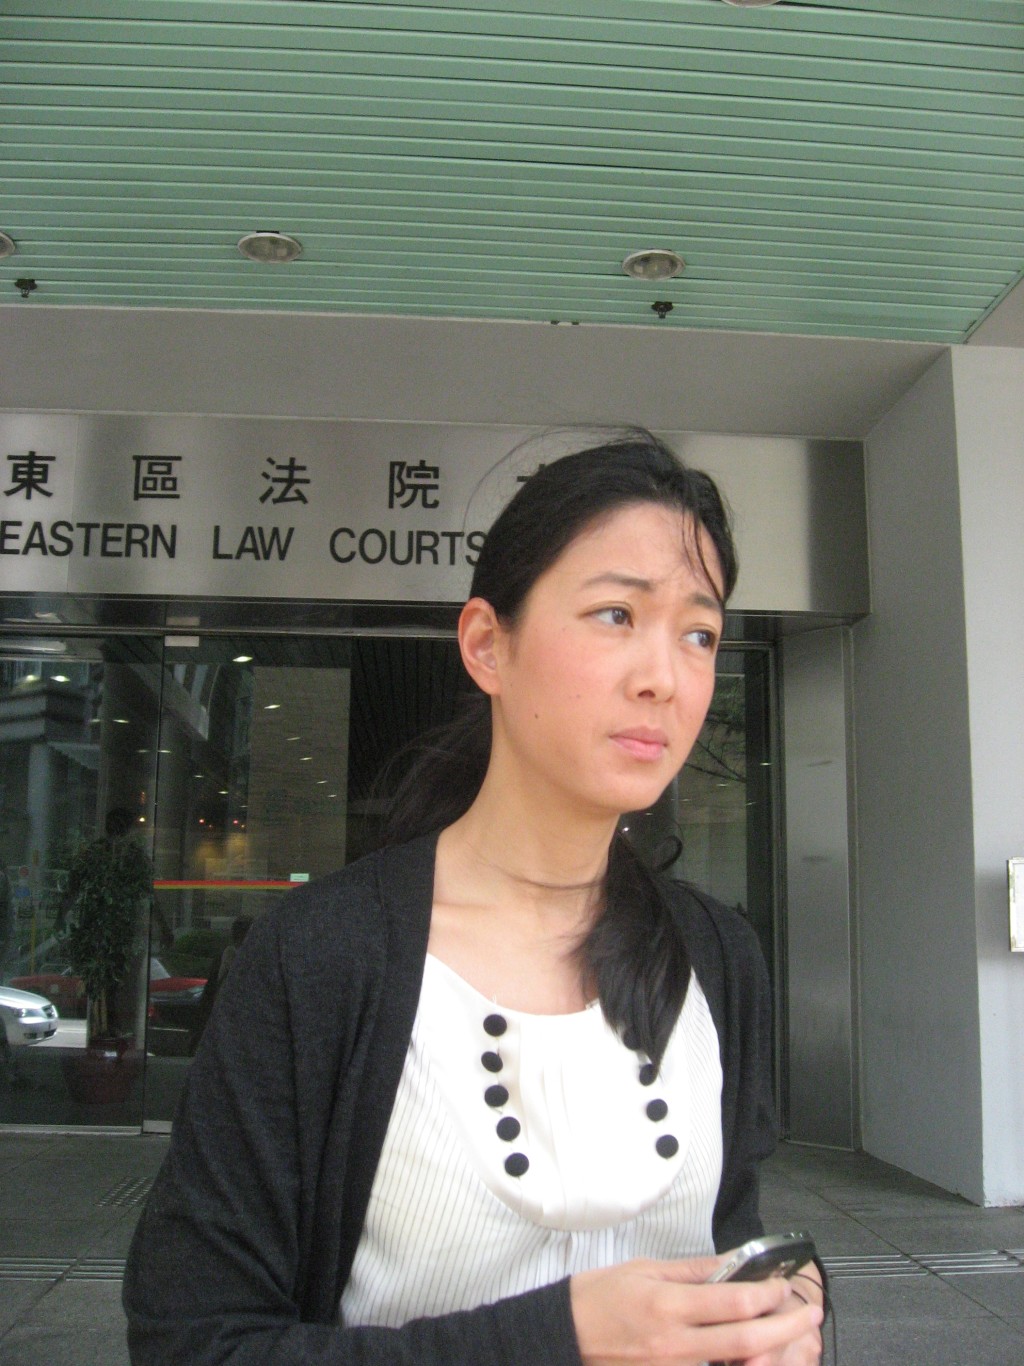 郭惠光2009年乘搭由其夫驾驶的汽车时因超速被截停、其丈夫吴继霖被揭发未有本港驾驶执照、郭惠光承认一项「允许并无驾驶执照的人驾驶」的票控被判罚款七百元。